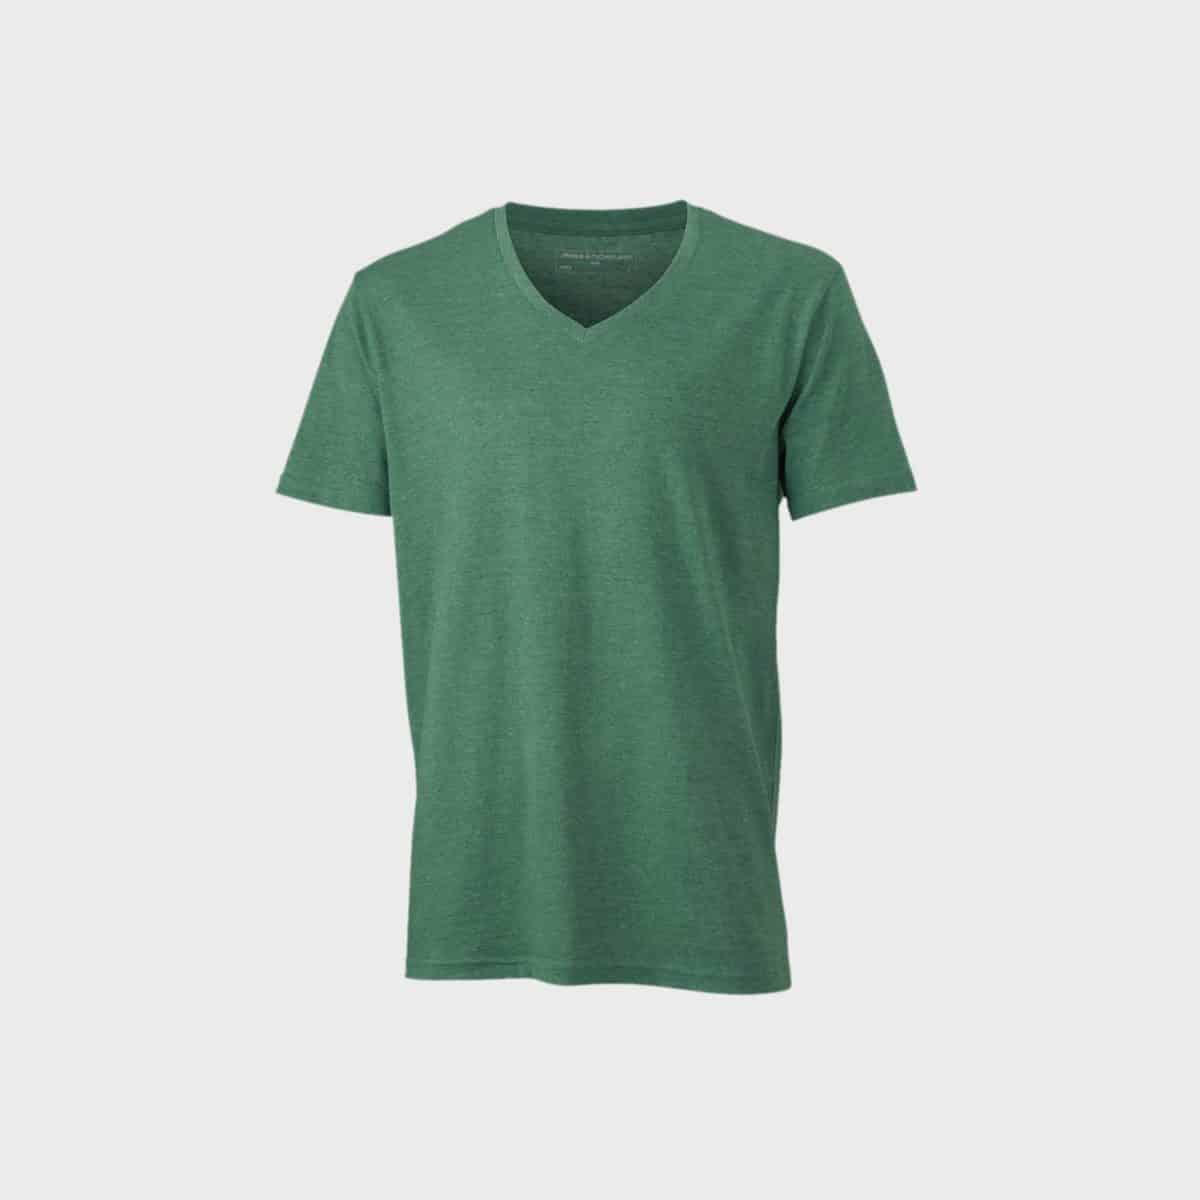 v-neck-heather-t-shirt-herren-greenmelange-kaufen-besticken_stickmanufaktur